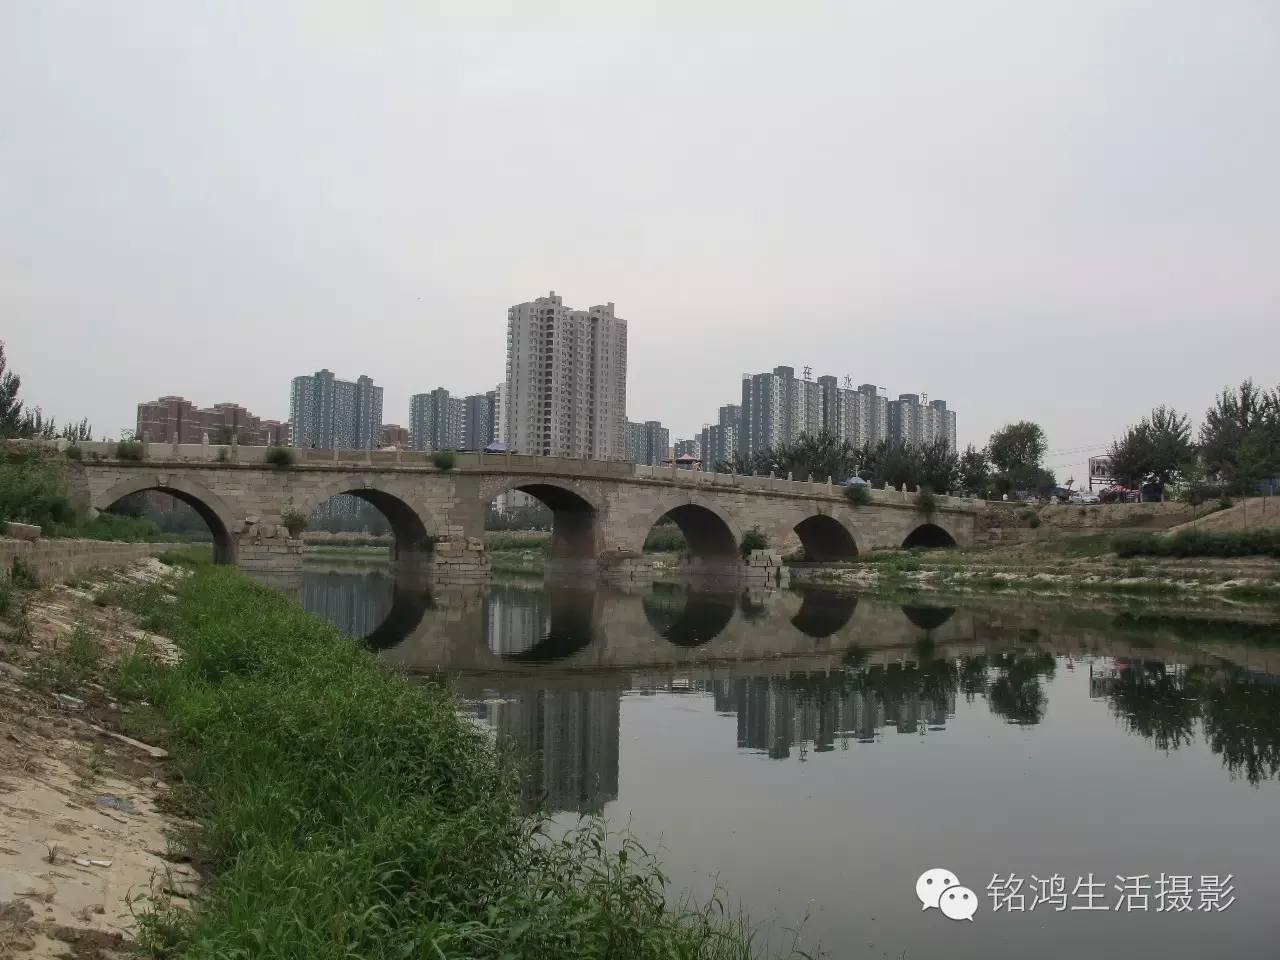 衡水安济桥又名衡水石桥或衡水老桥,位于河北省衡水市桃城区胜利东路